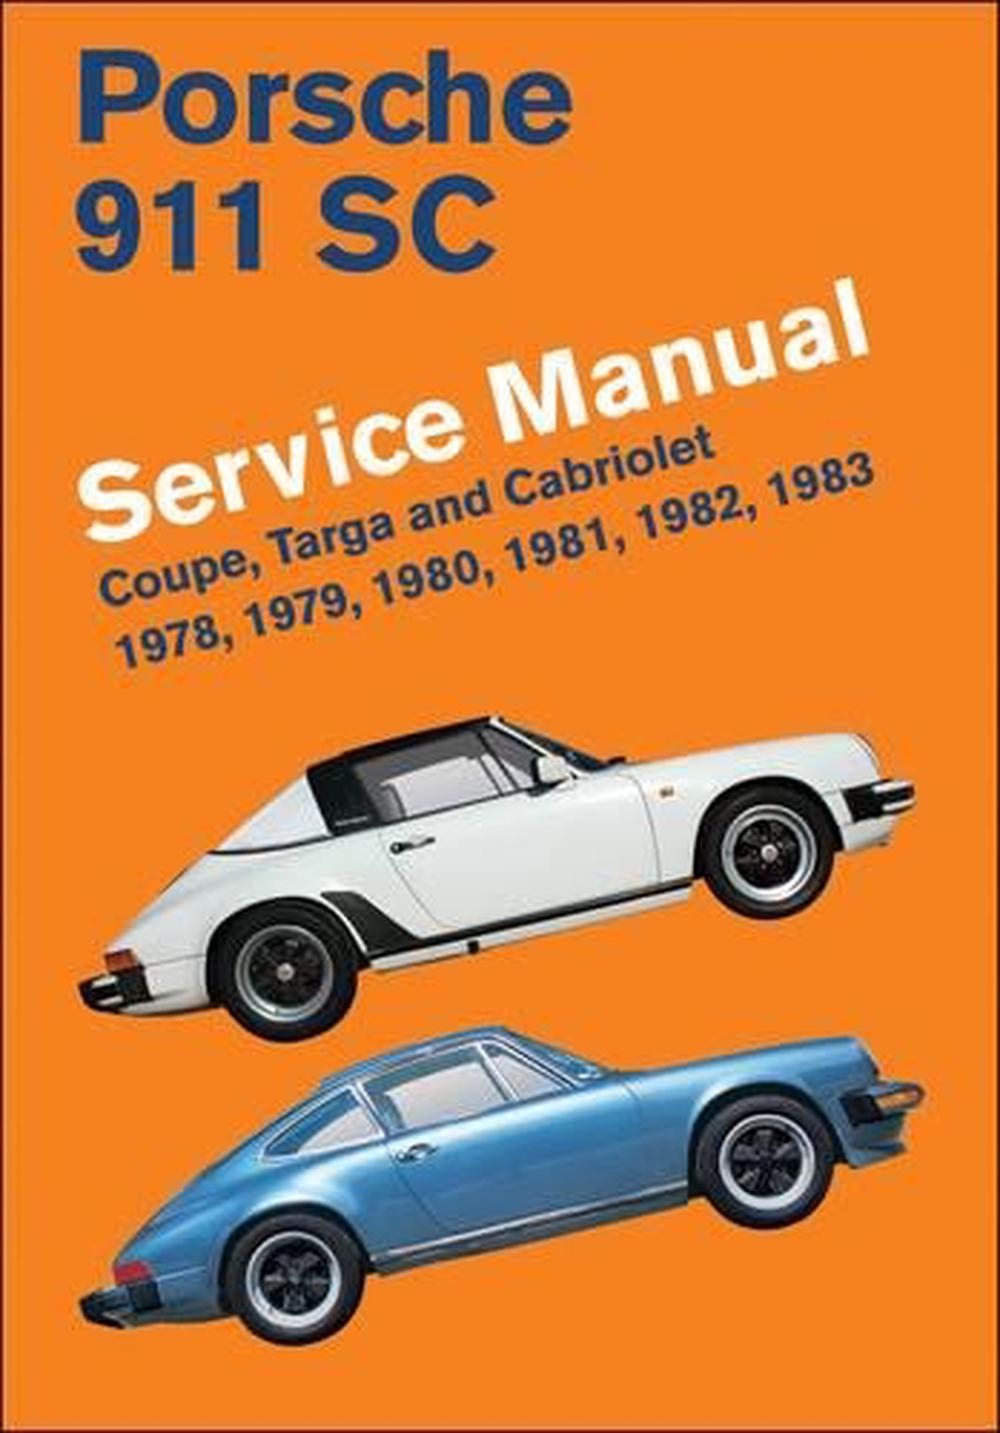 Porsche 911 SC Service Manual 1978, 1979, 1980, 1981, 1982, 1983 Coupe